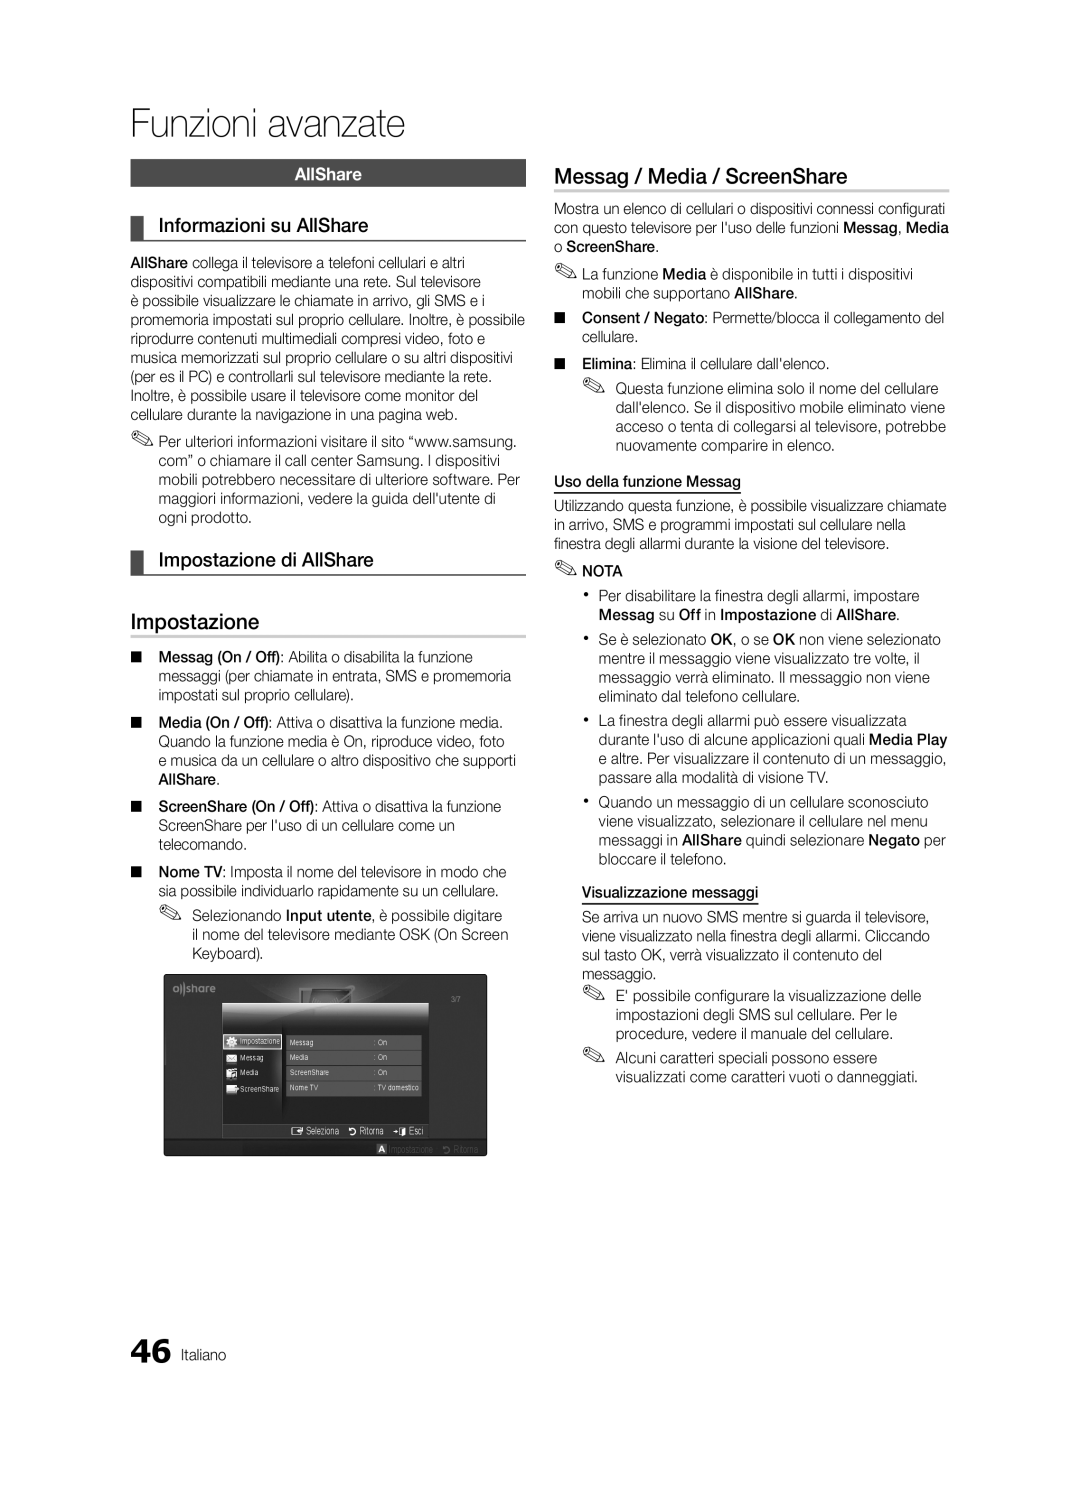 Samsung UE55C6500UPXZT manual Messag / Media / ScreenShare, Informazioni su AllShare, Impostazione di AllShare 